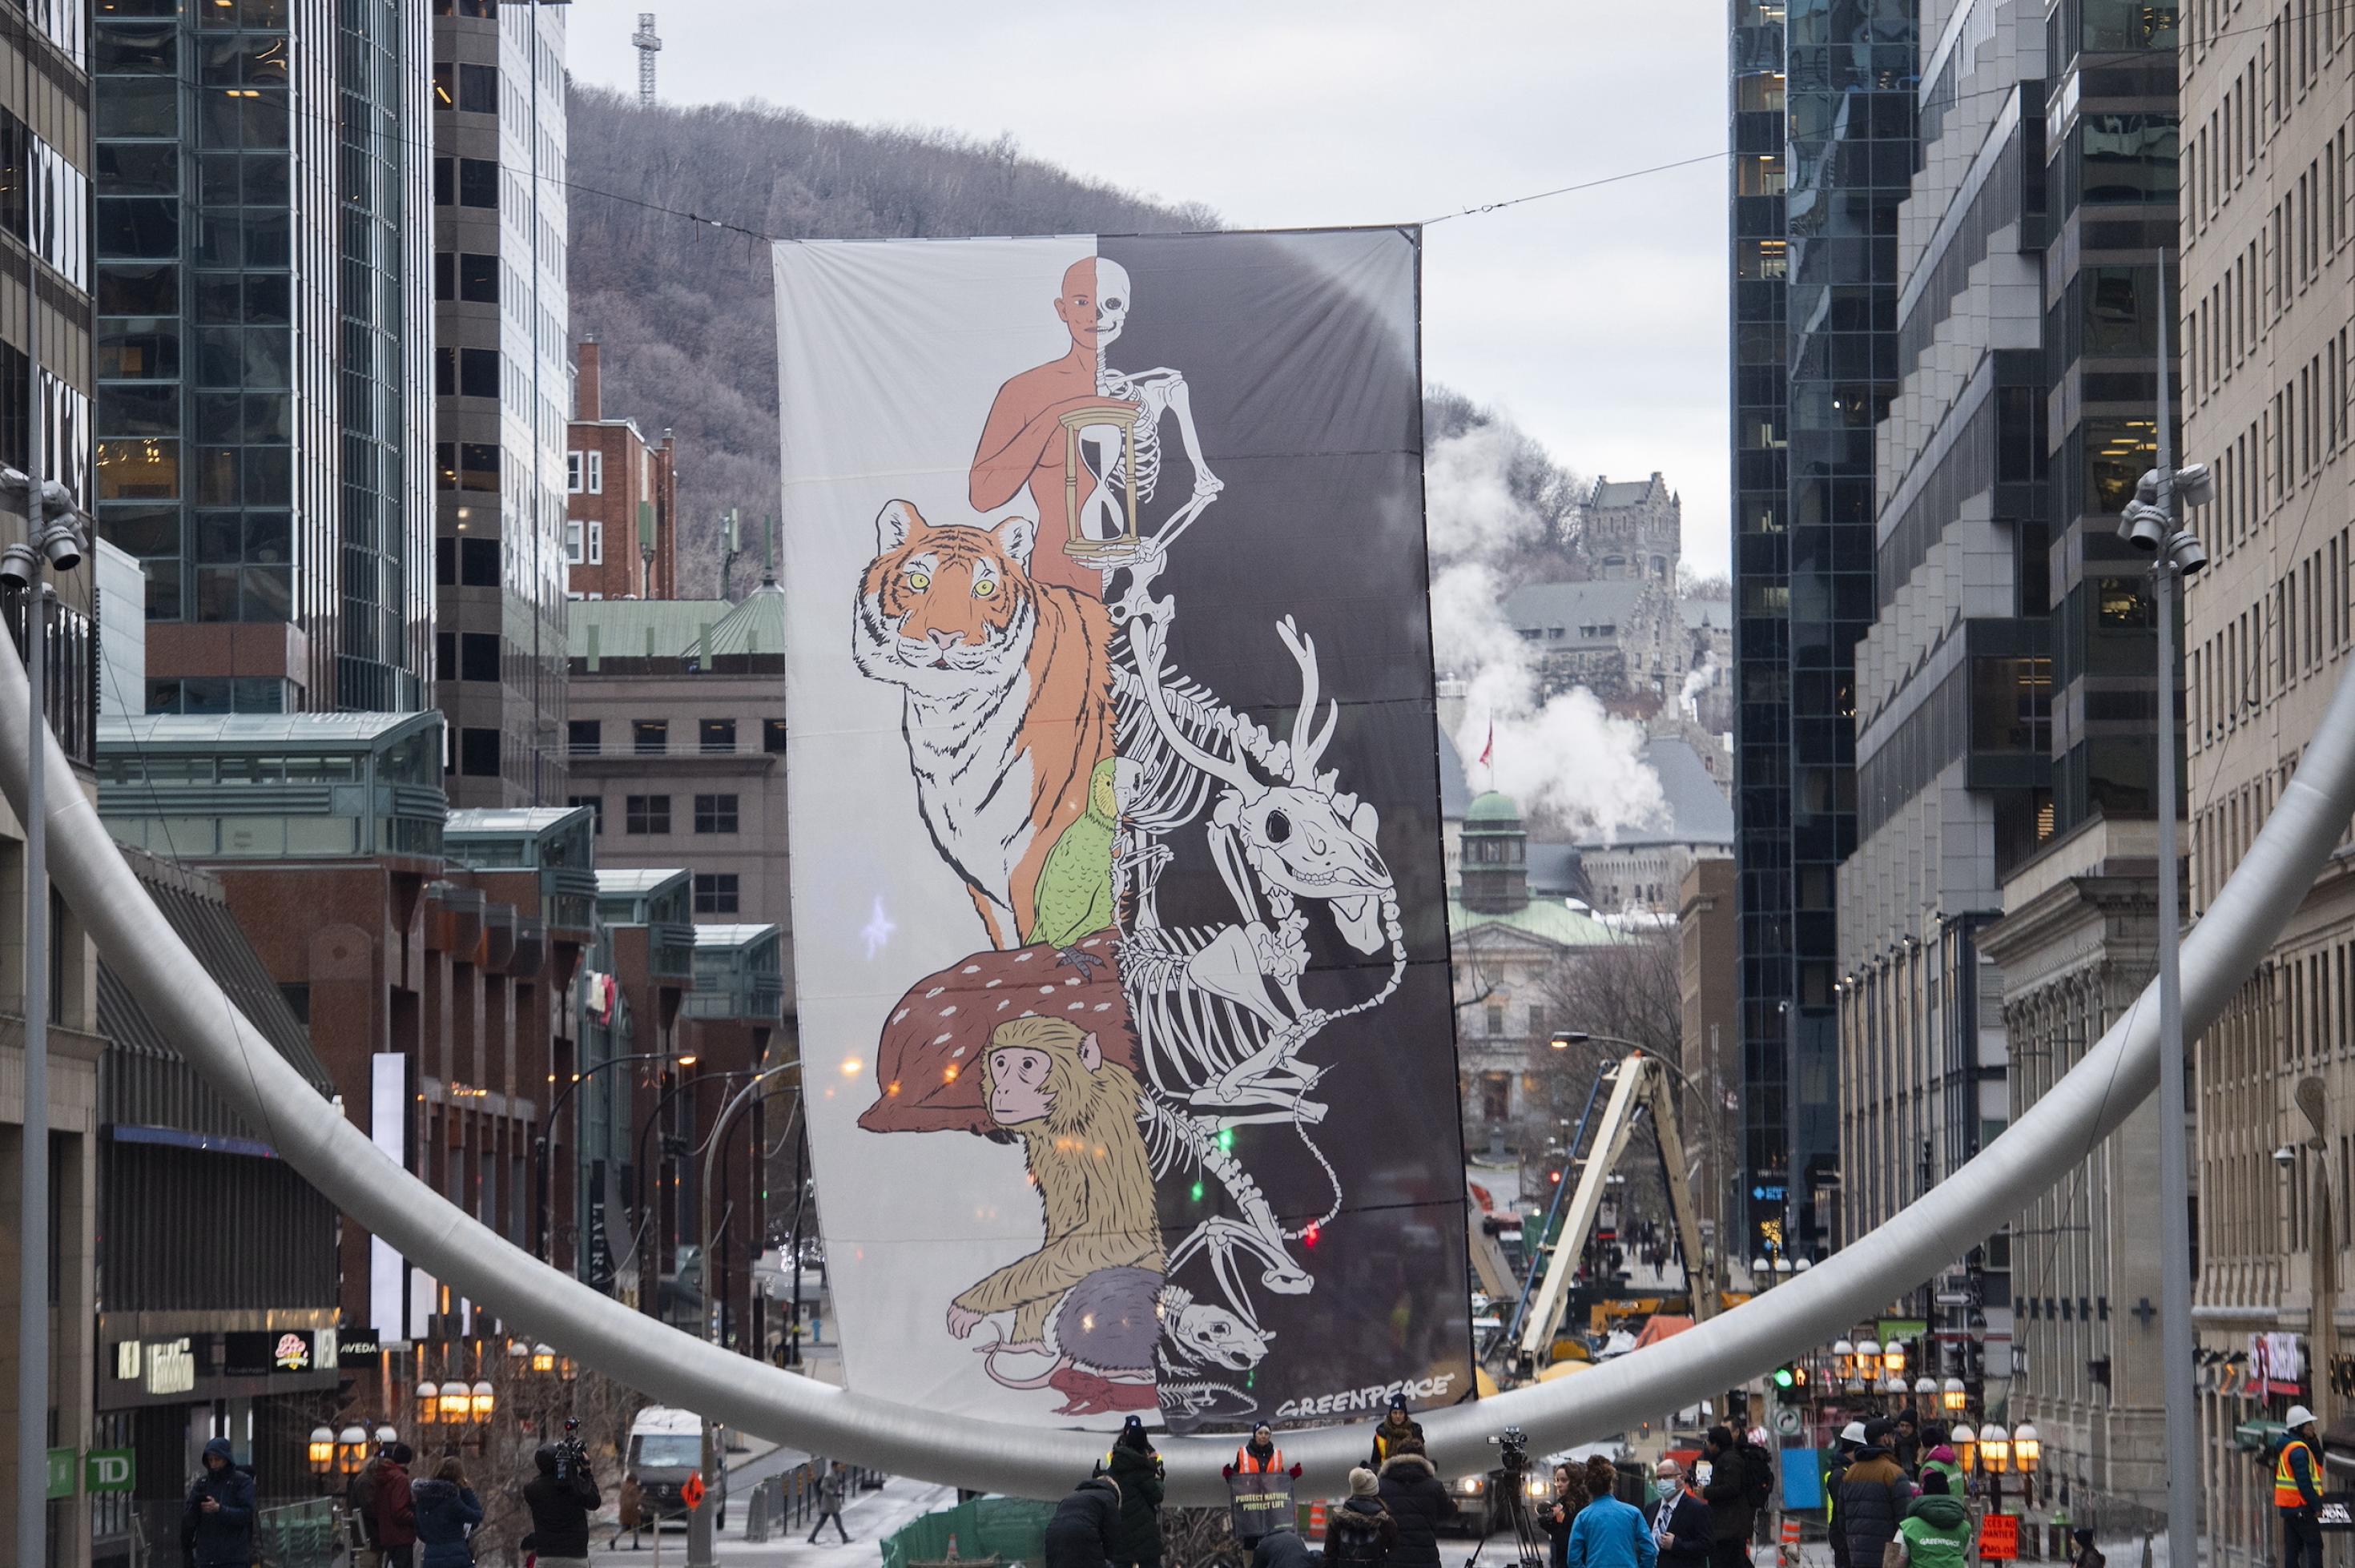 Winterliche Hauptstrasse in Montreal mit einem Banner, bei dem auf der linken Seite Lebewesen wie Mensch, Tiger und Affe zu sehen sind und auf der rechten Seite deren Skelette.